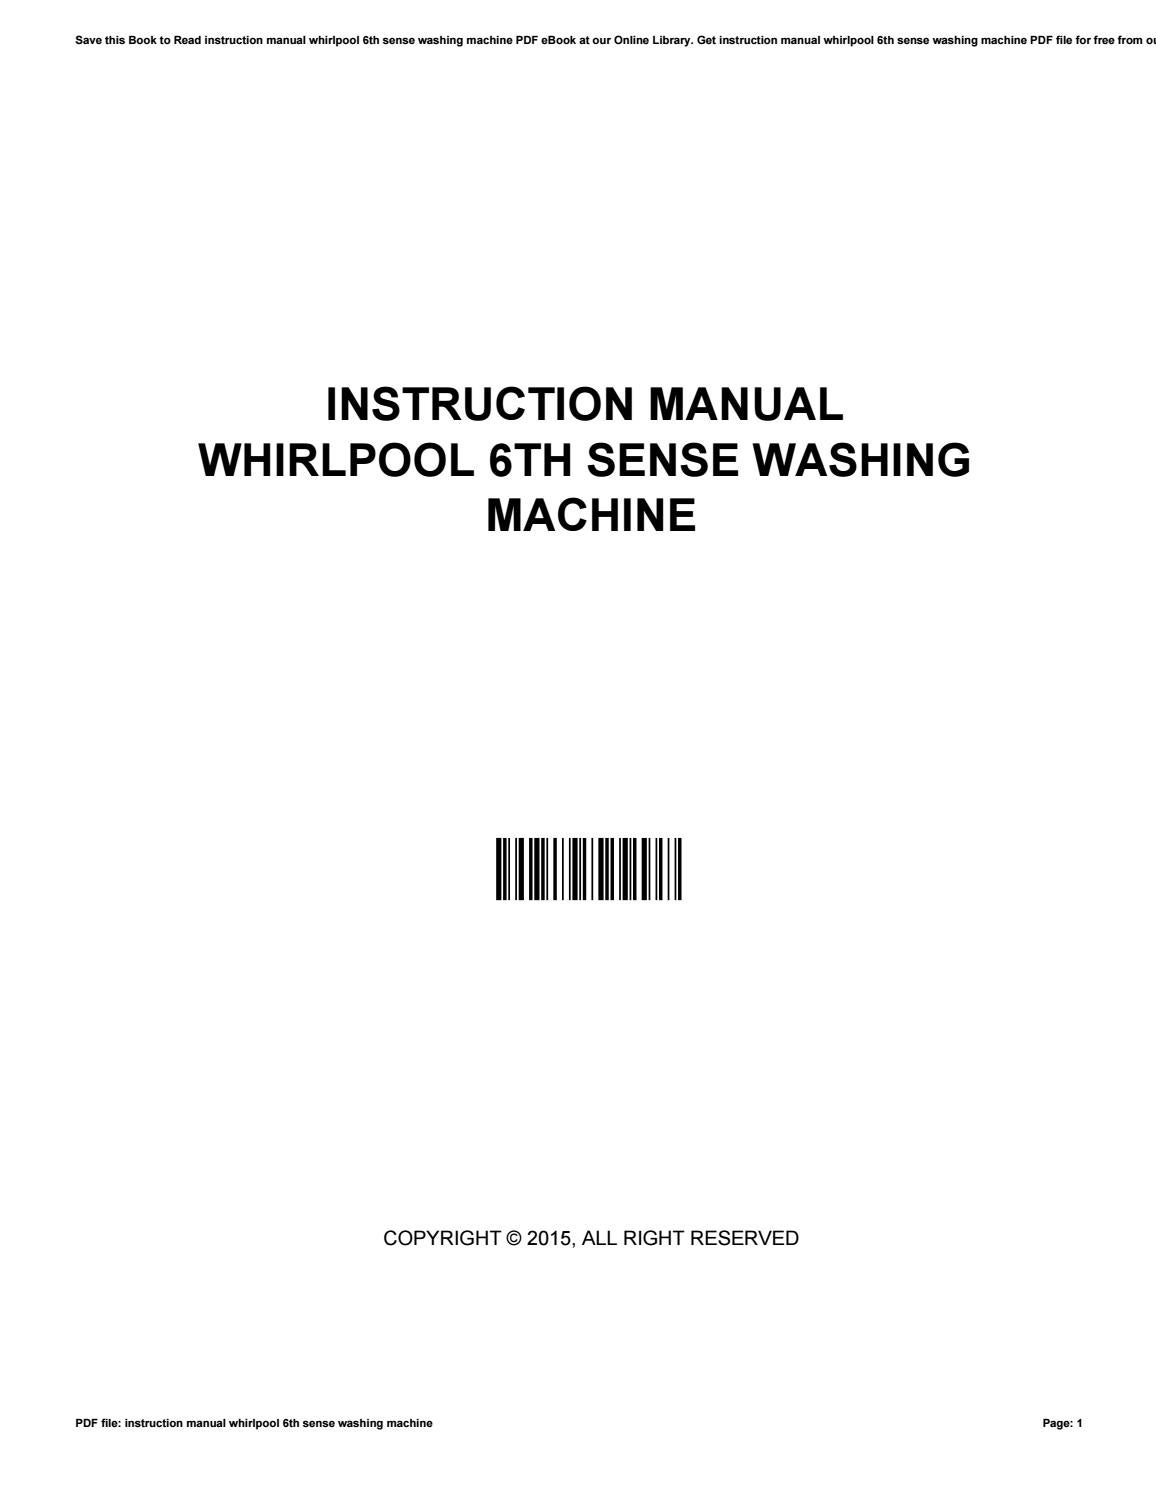 simpson washing machine instruction booklet